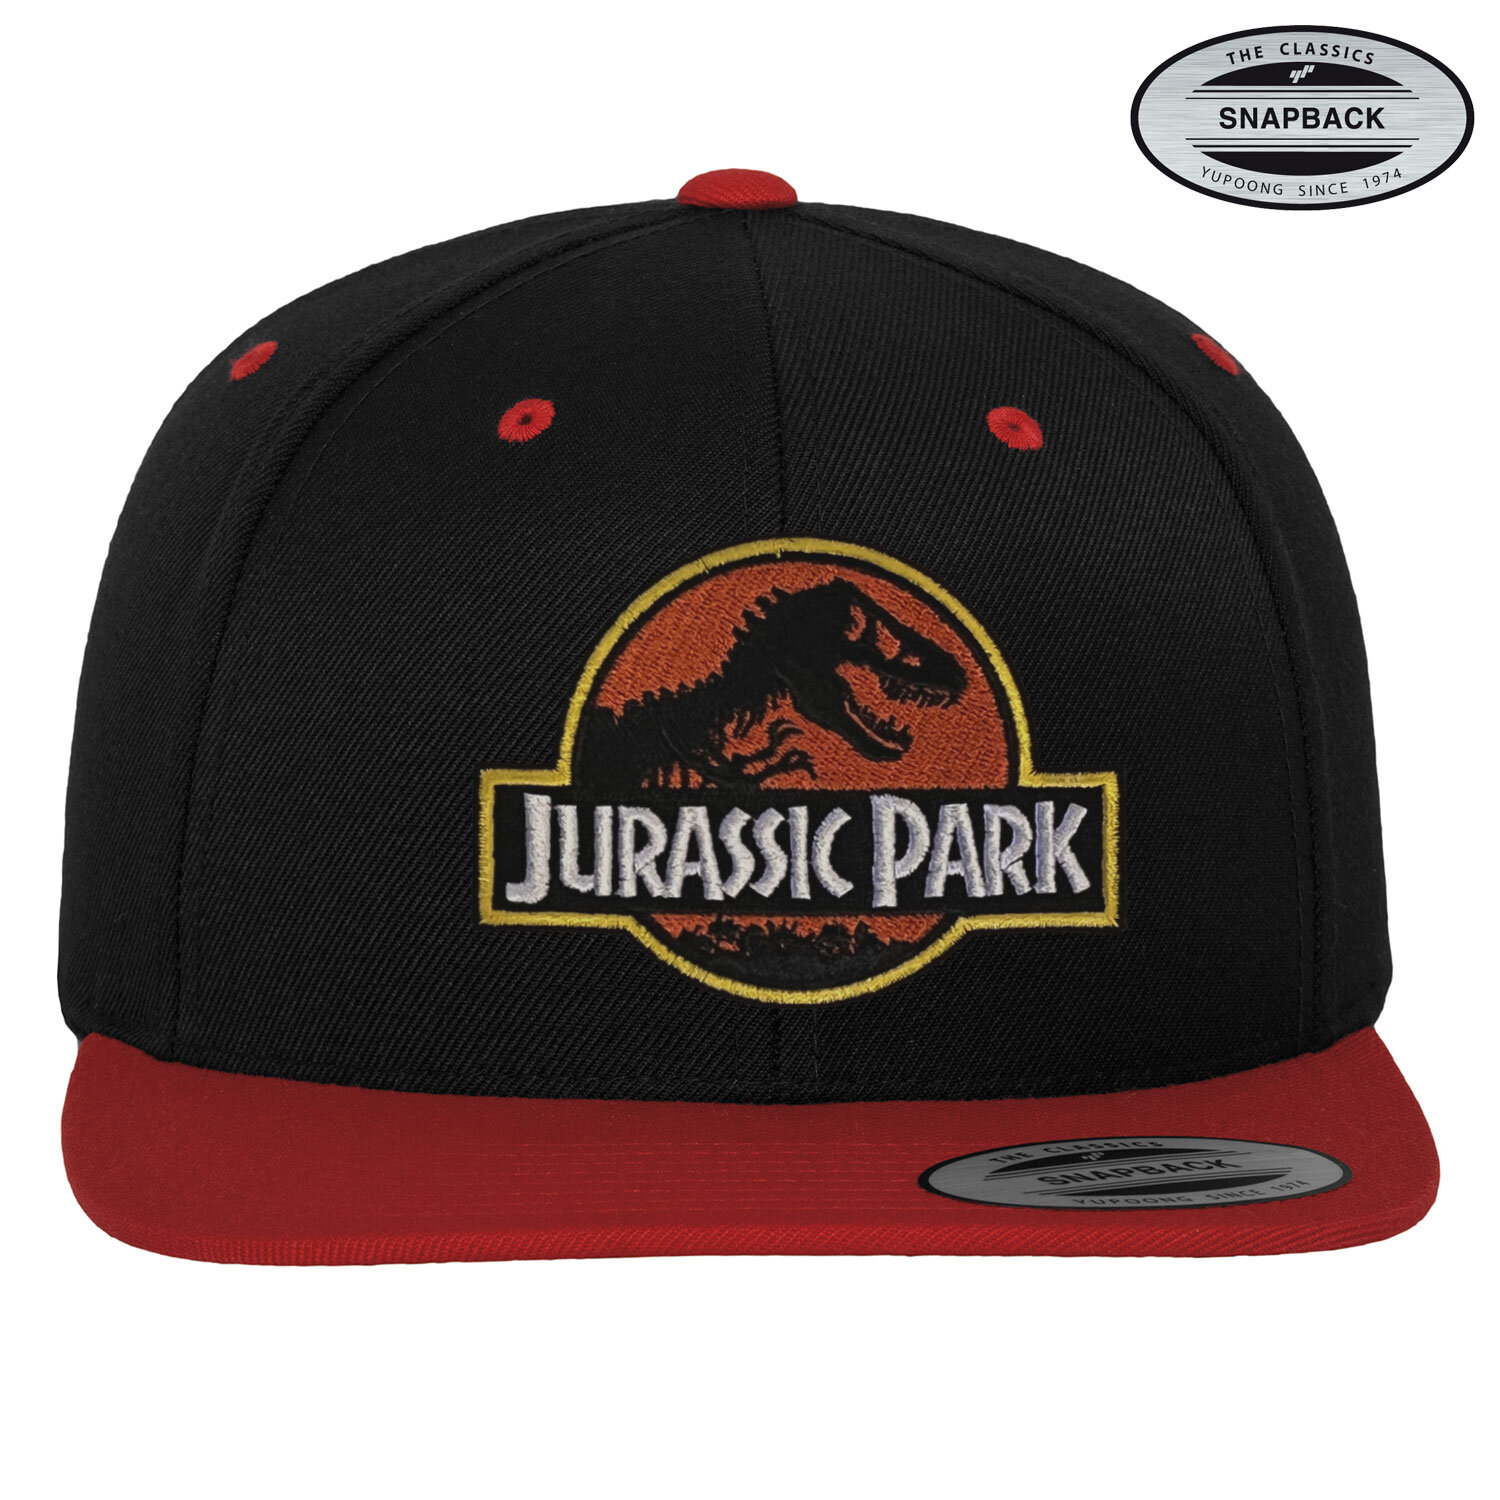 Jurassic Park Premium Snapback Cap